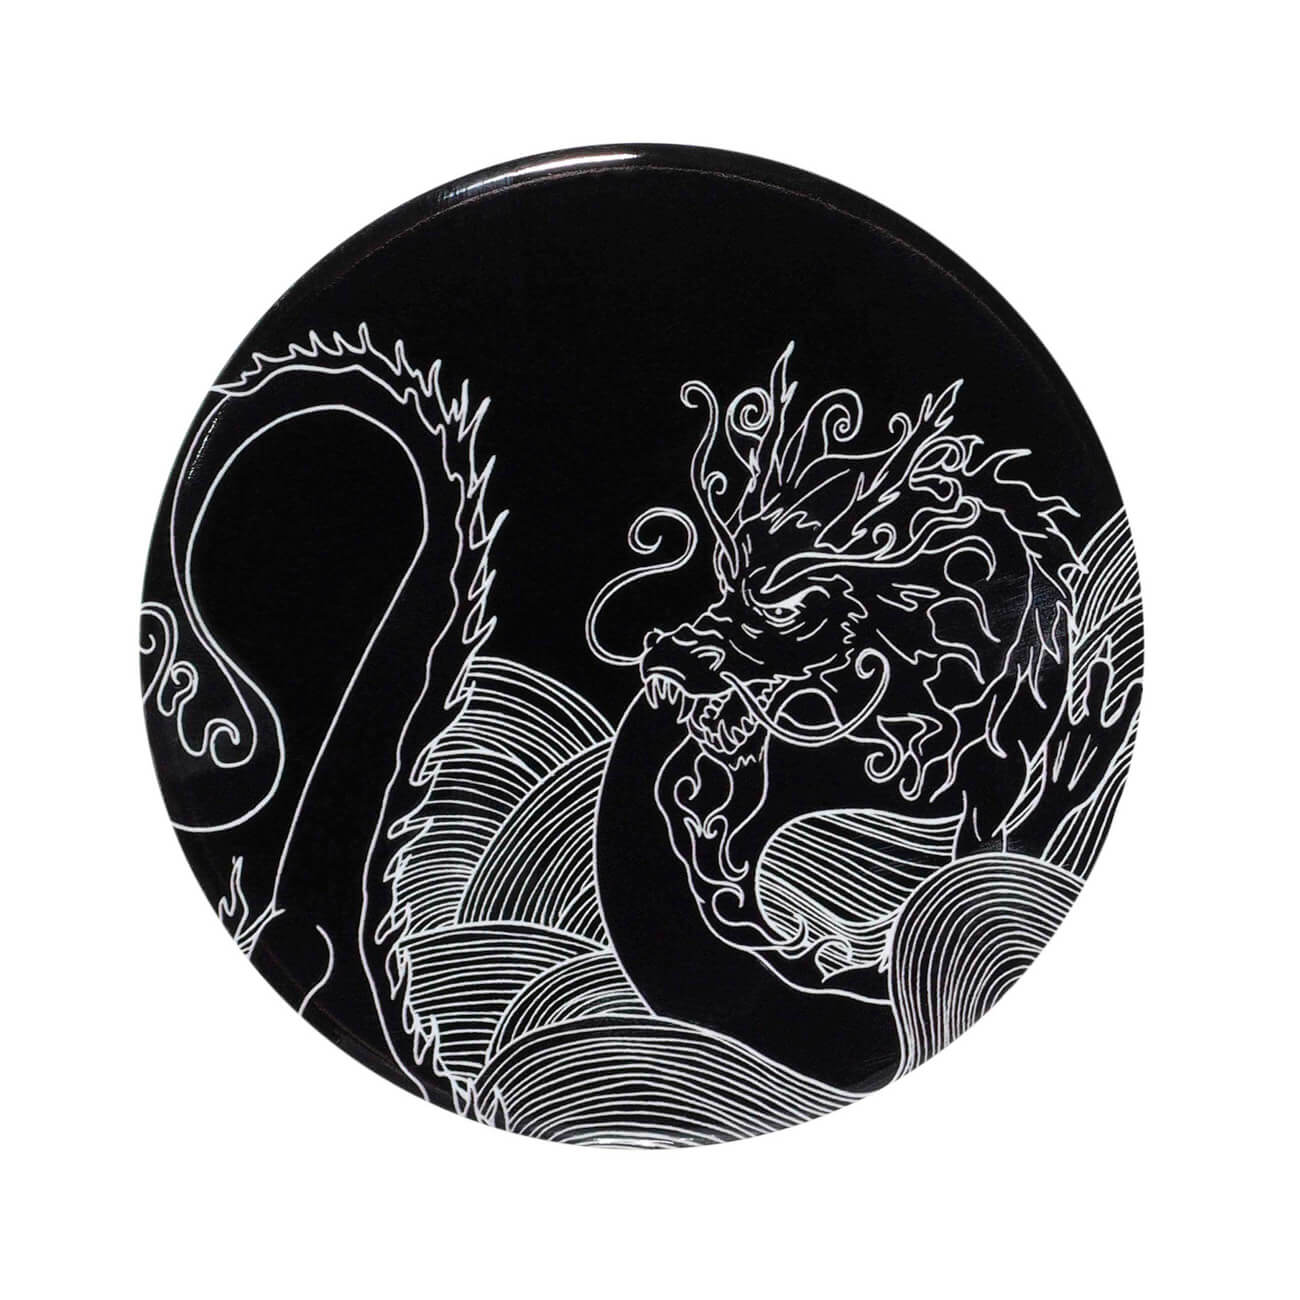 Подставка под кружку, 11 см, керамика/пробка, круглая, черная, Дракон, Dragon dayron емкость для хранения 22х14 см керамика черная дракон dragon dayron